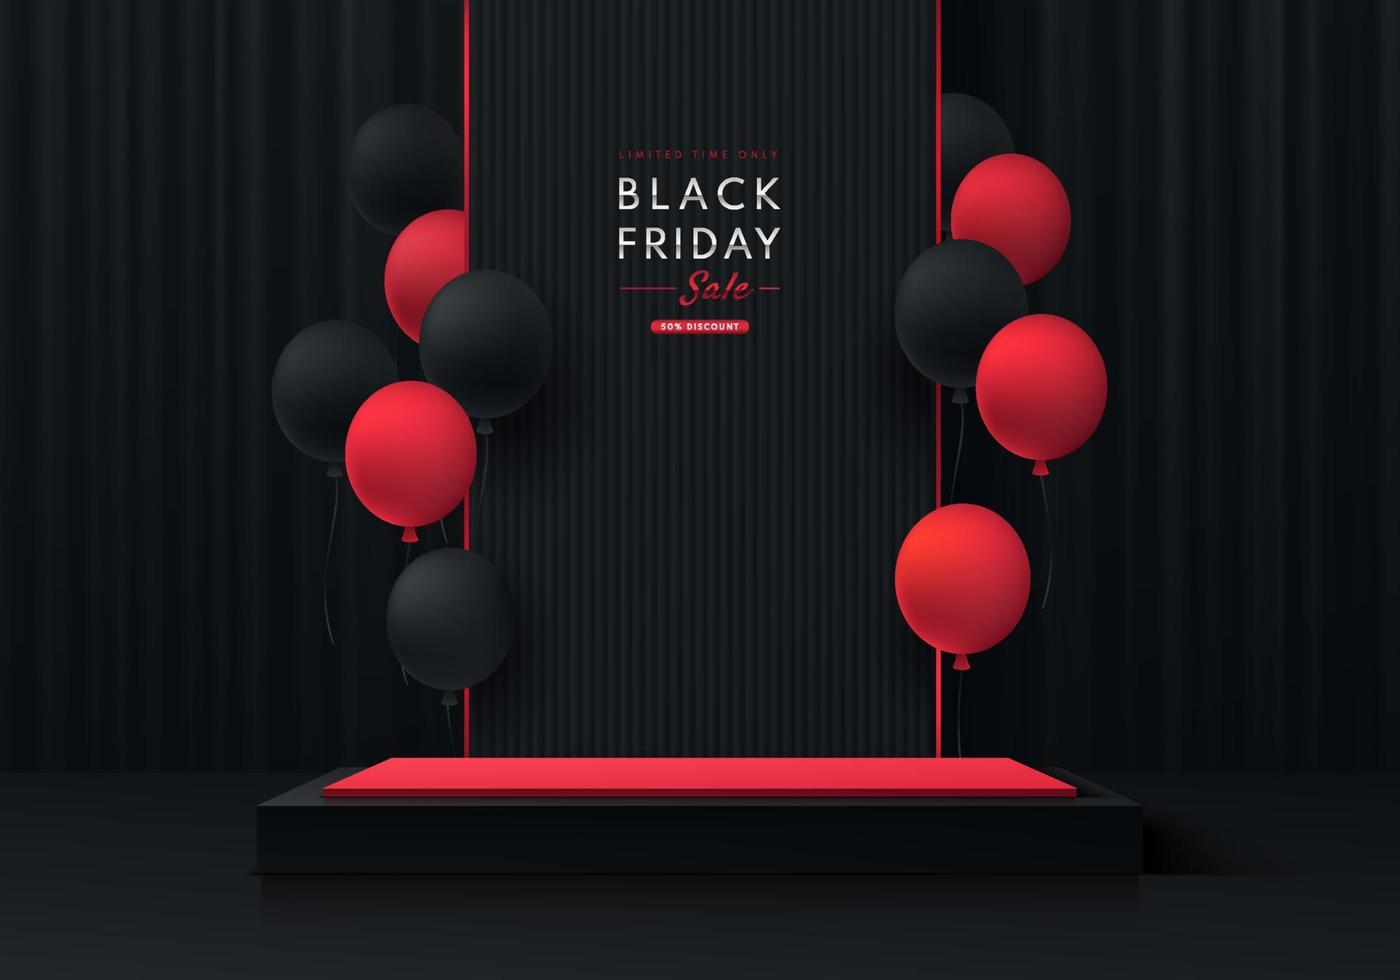 pódio de pedestal de caixa de cubo preto e vermelho 3d realista com fundo de cortina preta e balões vermelhos. conceito de venda de sexta-feira negra, vitrine de palco de produtos de cena mínima abstrata vetorial, exibição de promoção. vetor